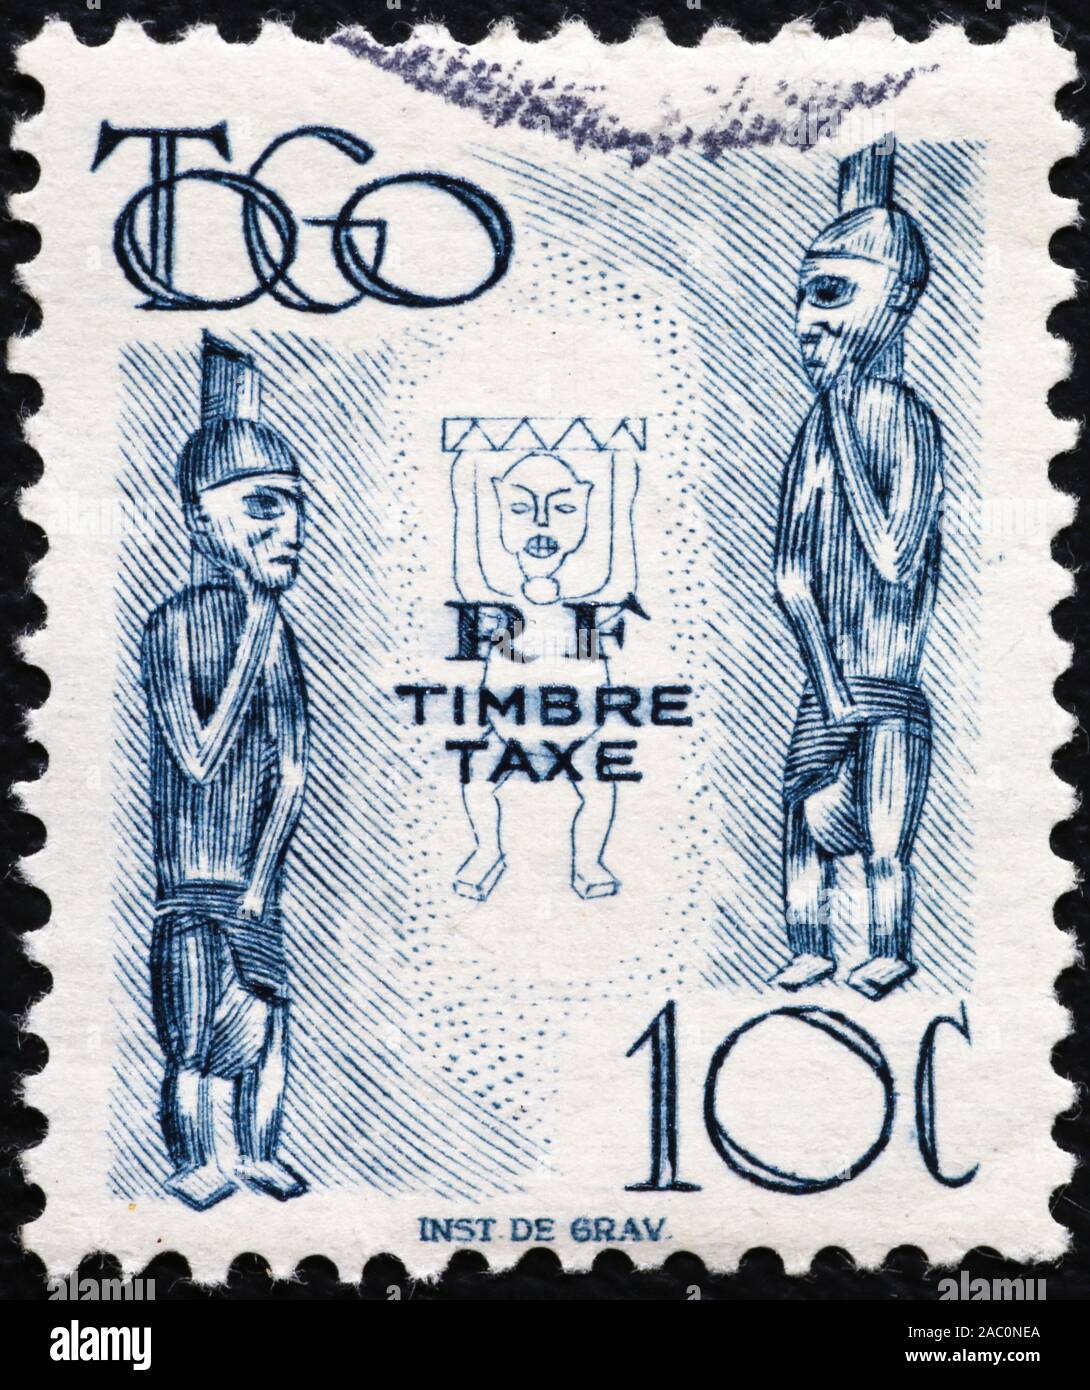 Statuettes en bois sur de vieux timbres Togo Banque D'Images